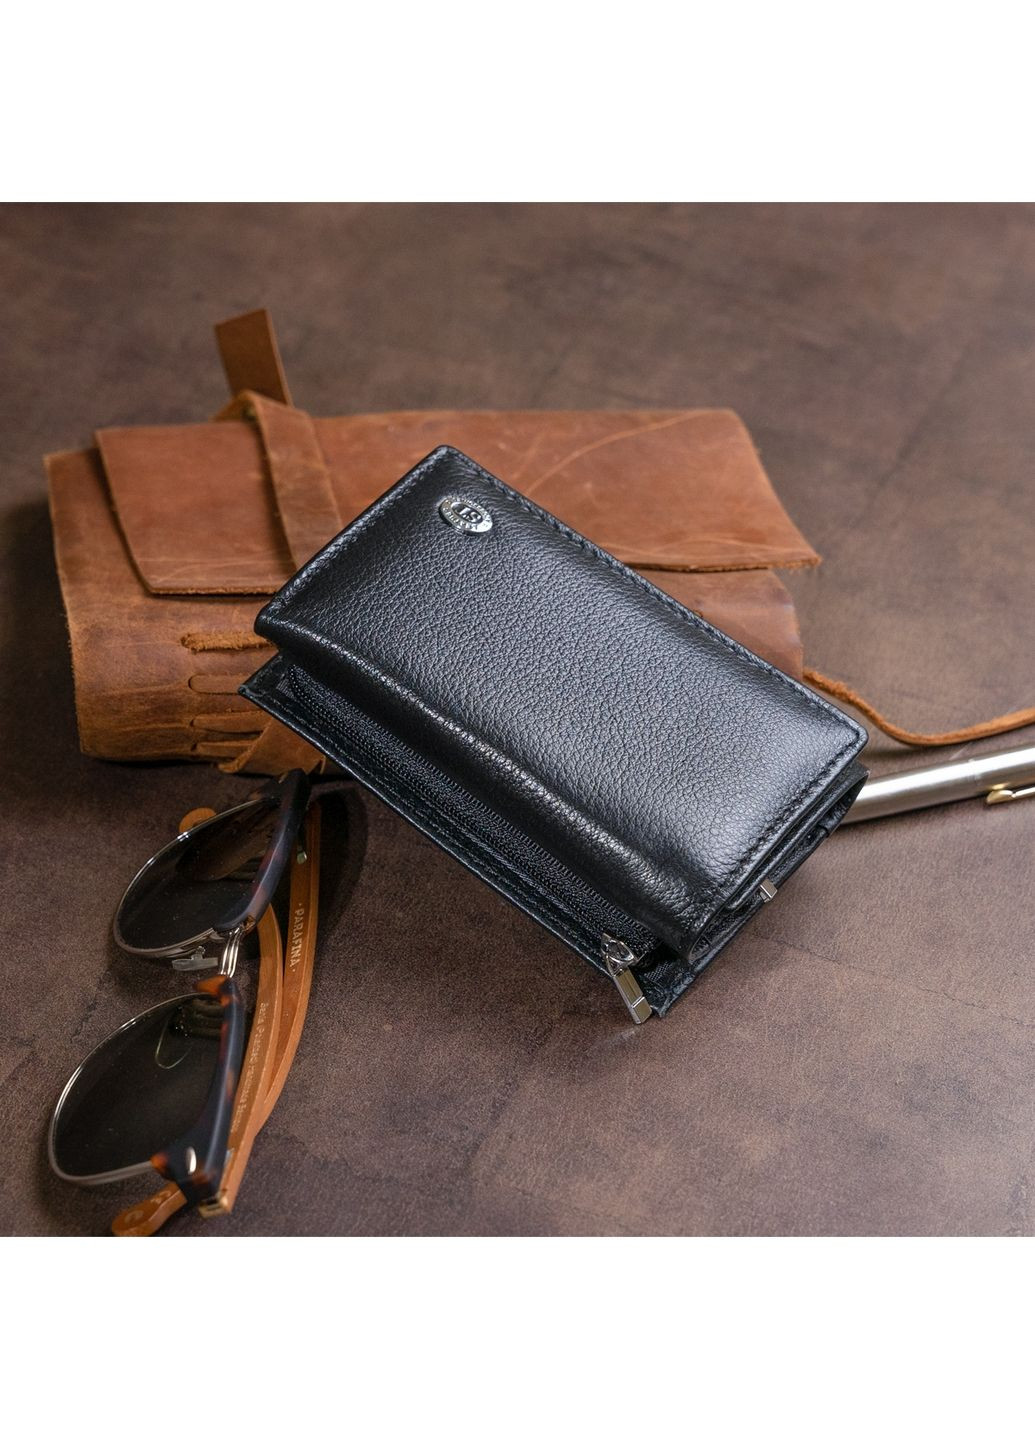 Жіночий шкіряний гаманець st leather (282587310)